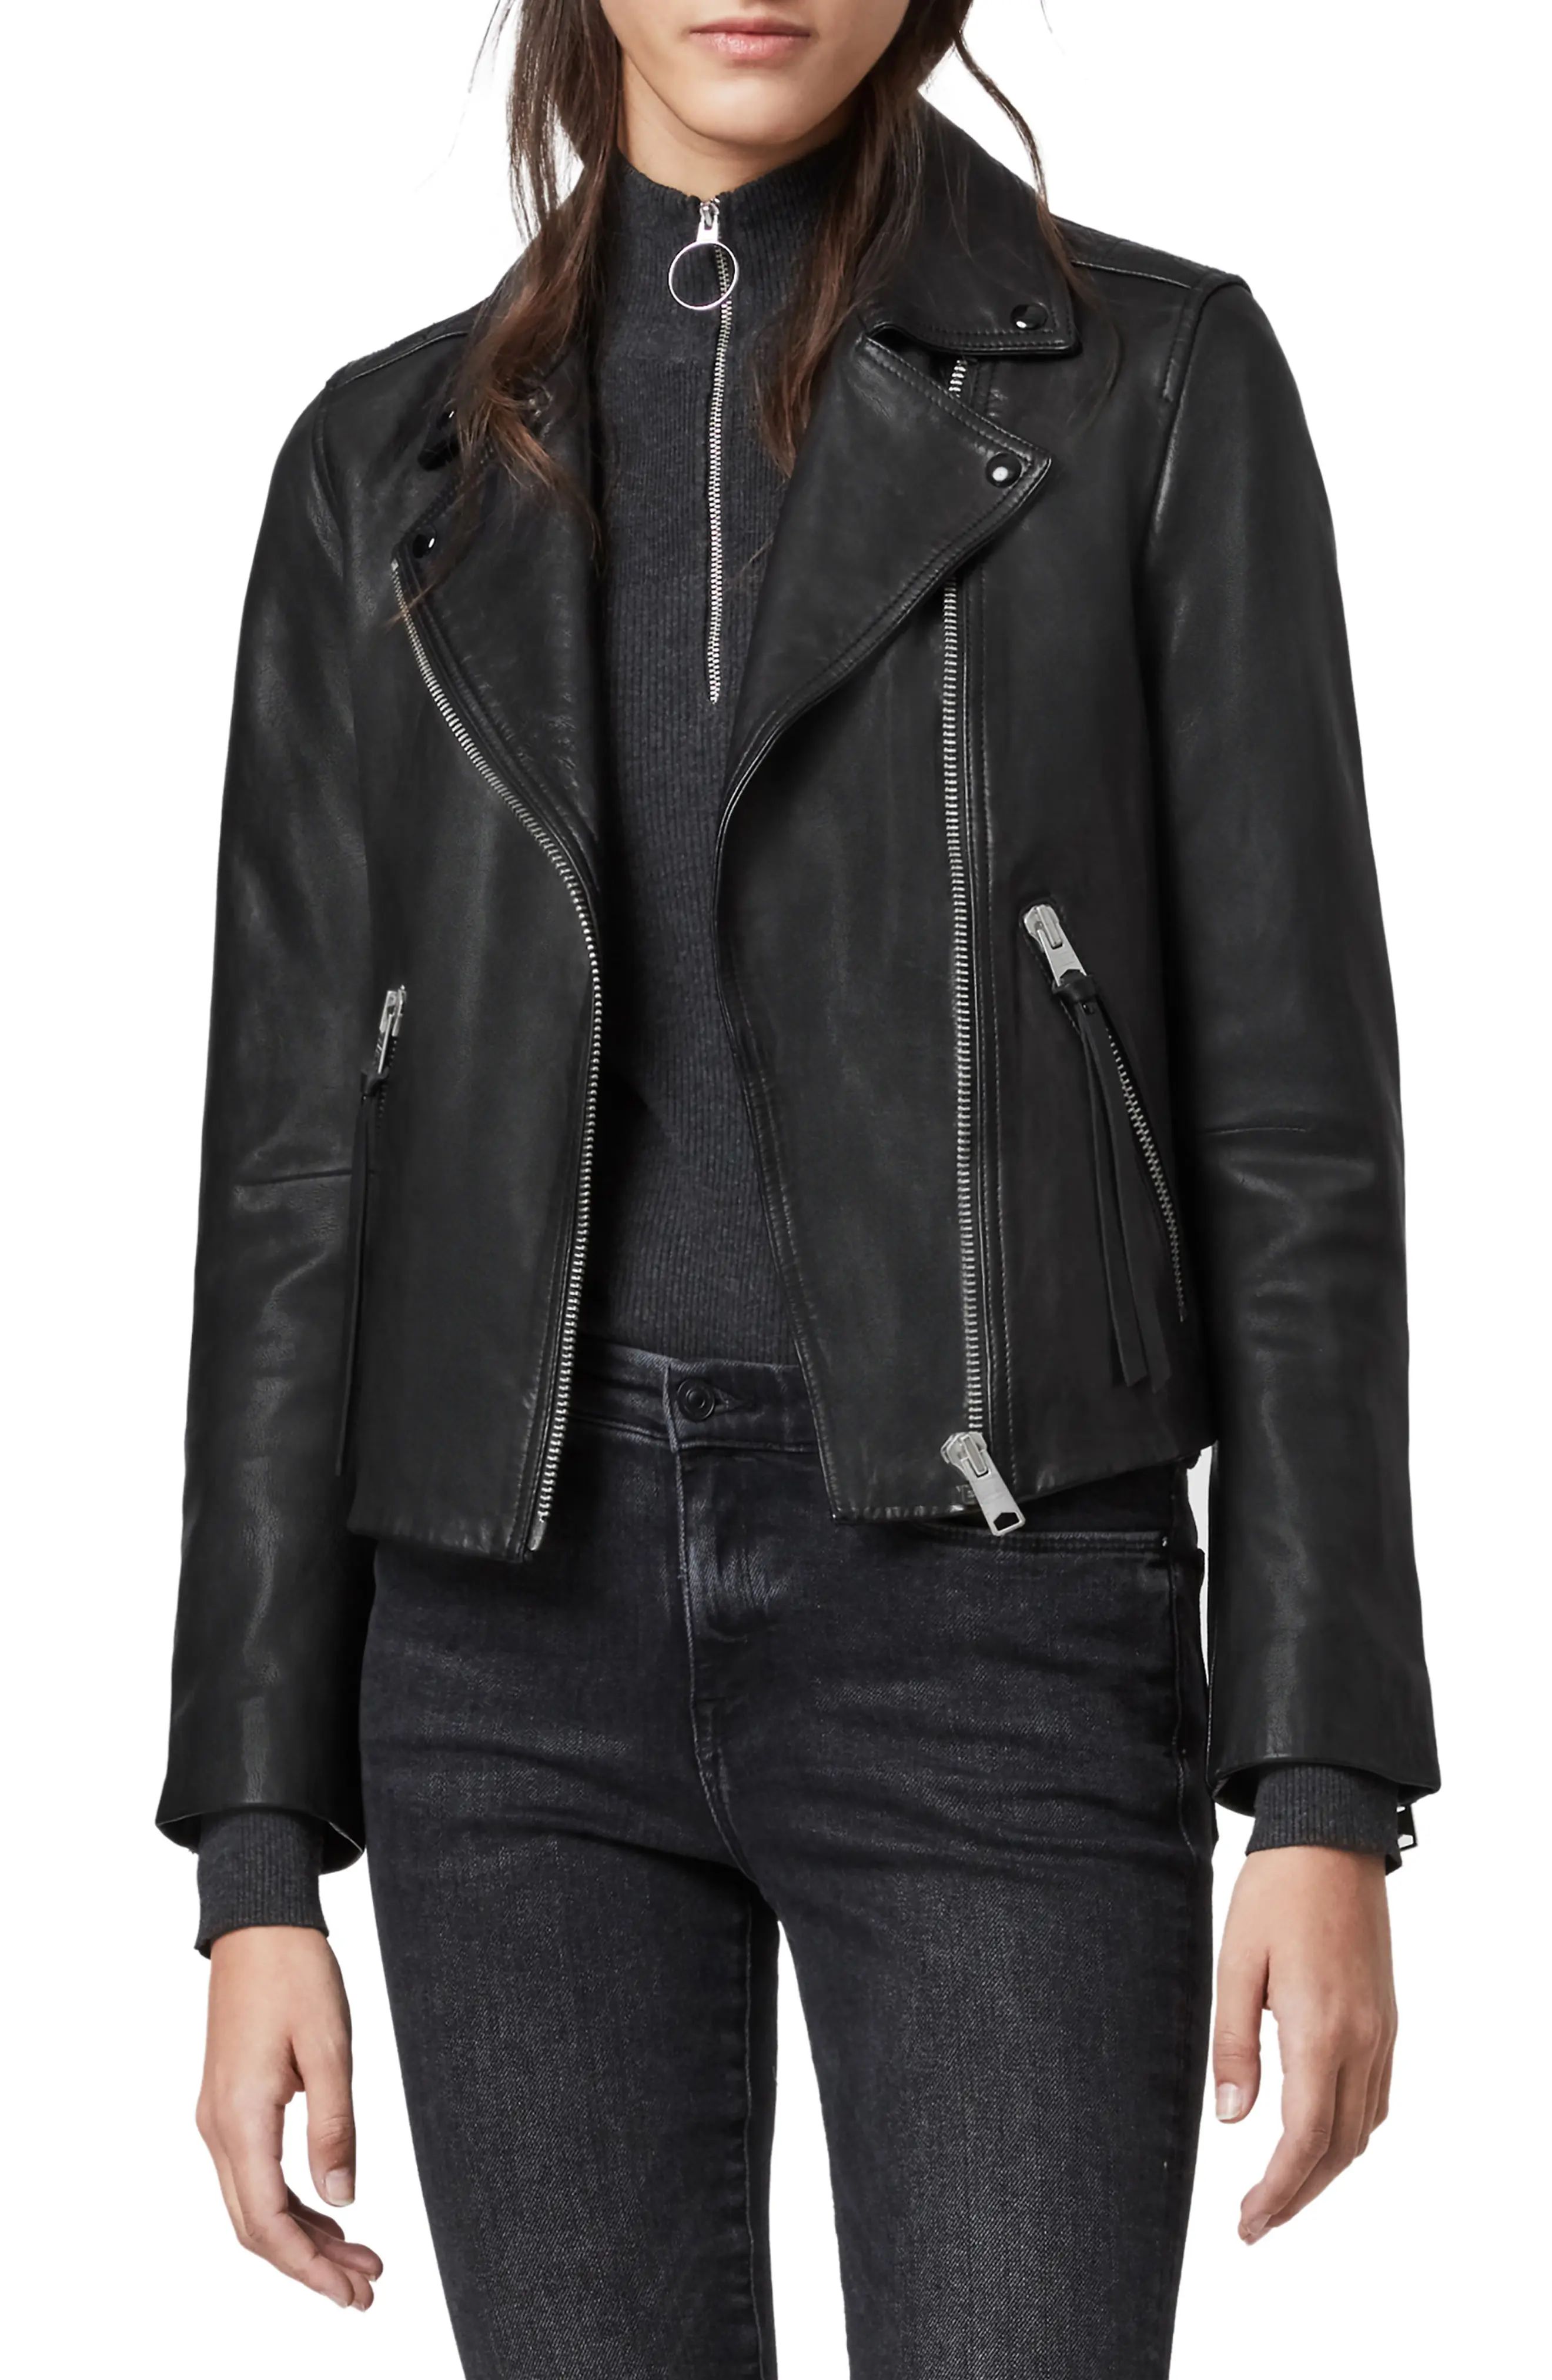 AllSaints Dalby Leather Biker Jacket, Size 8 in Black at Nordstrom | Nordstrom